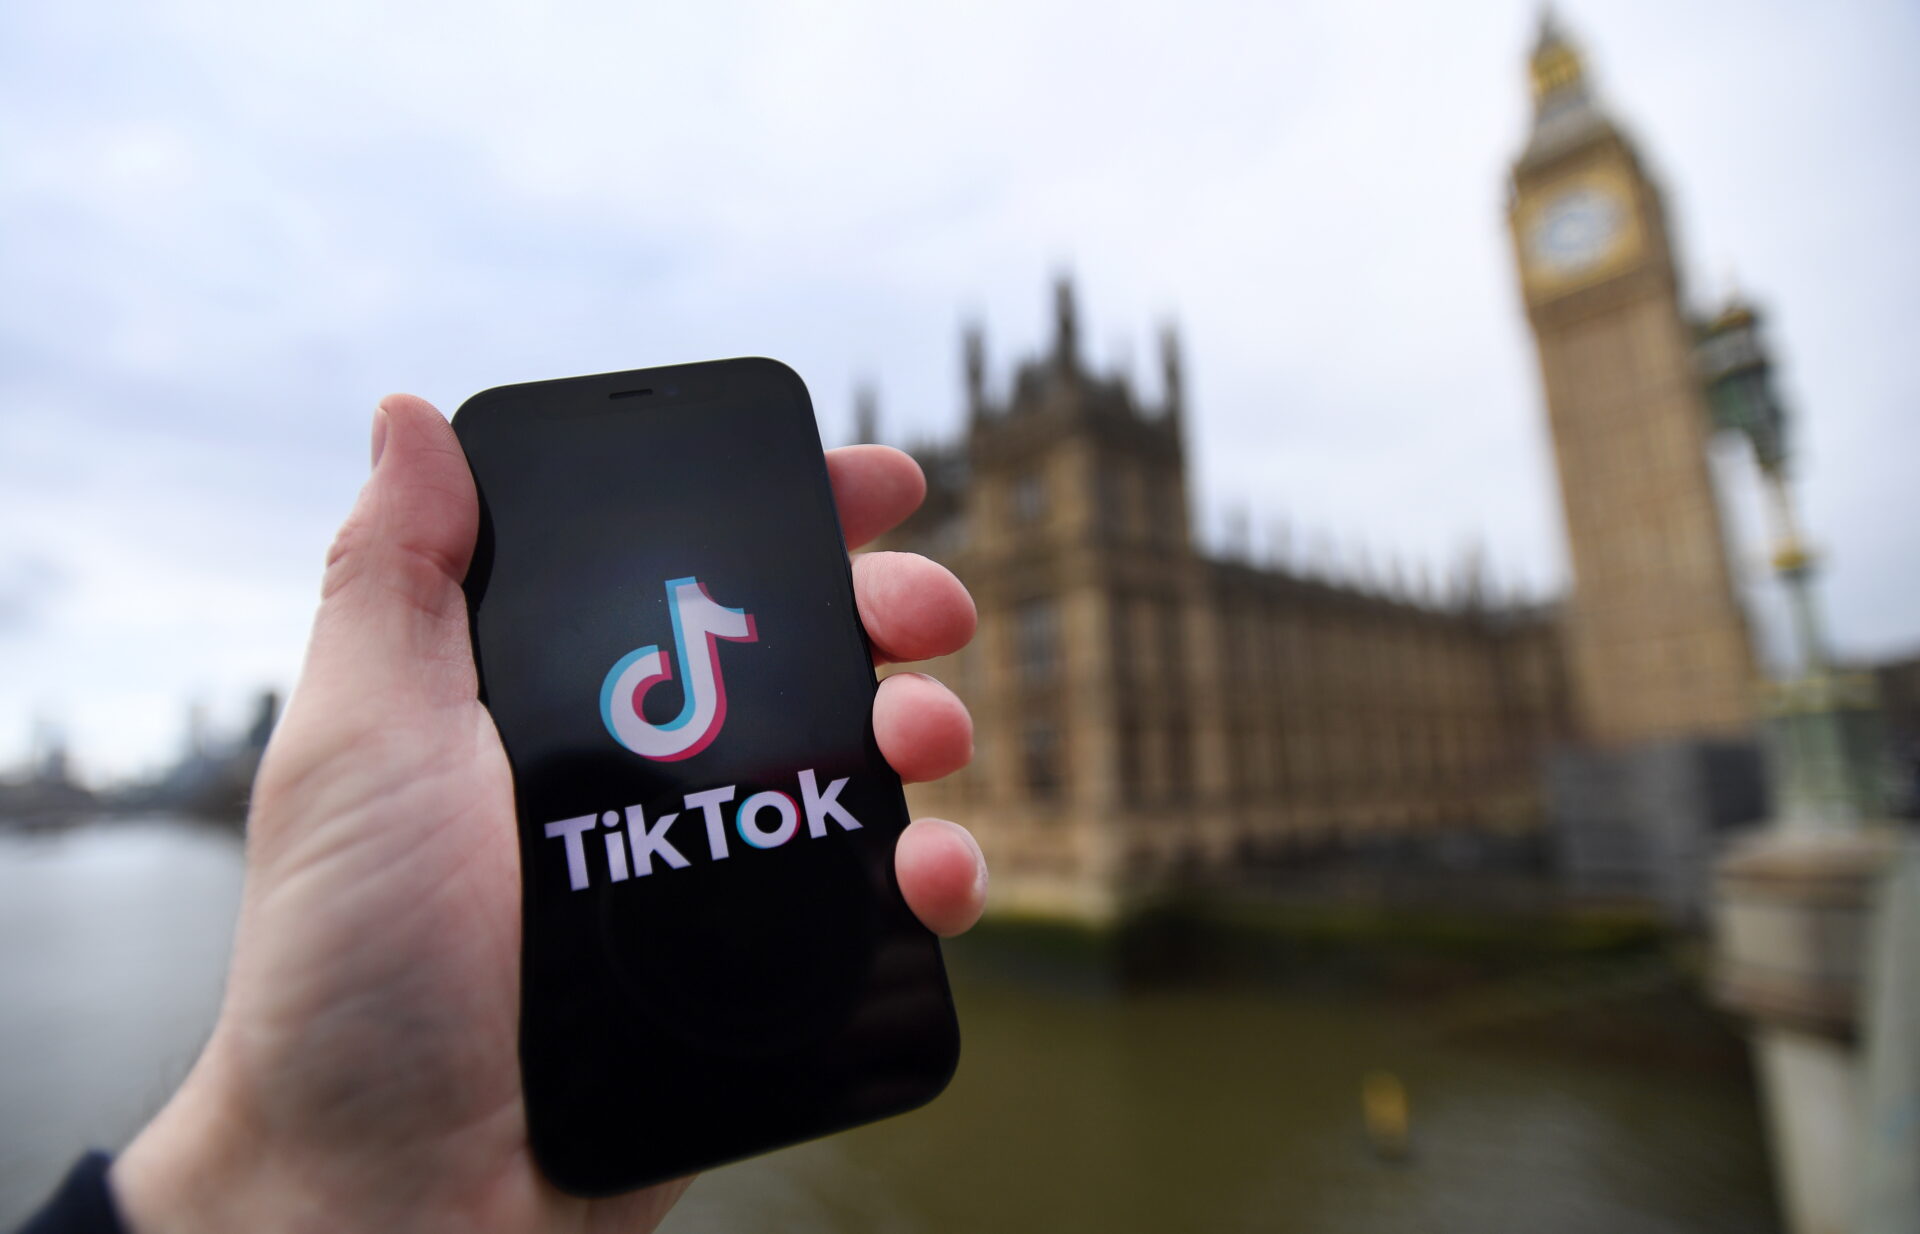 Gobierno británico prohibirá a sus funcionarios usar TikTok en móviles oficiales